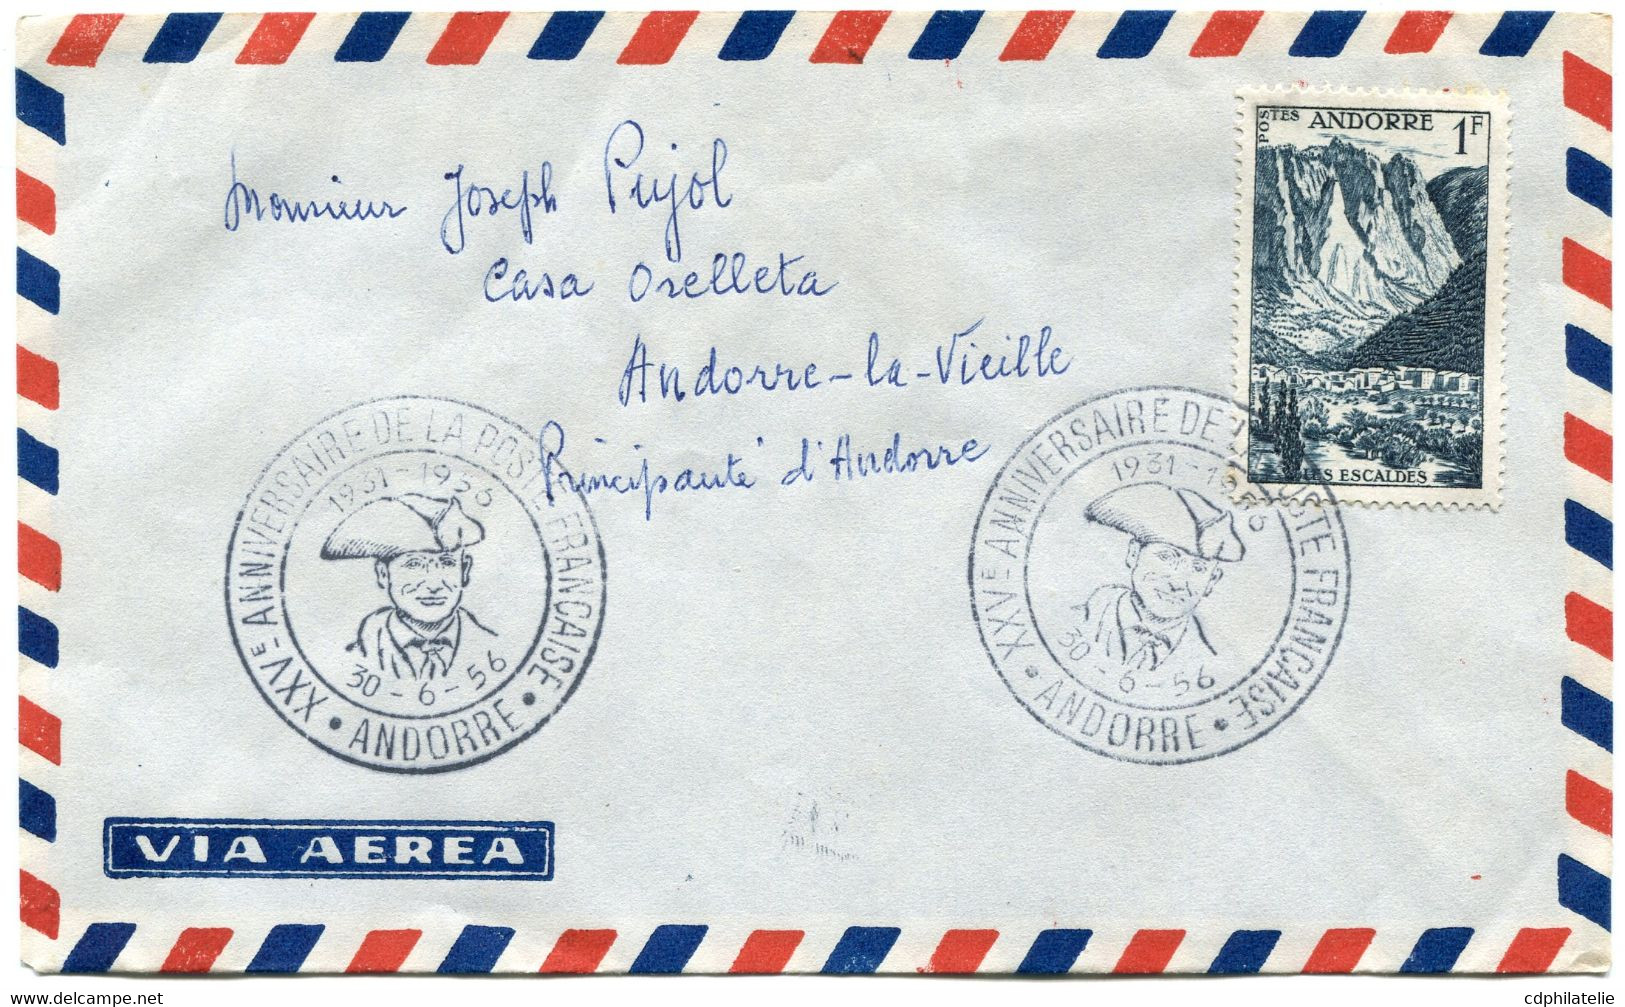 ANDORRE FRANCAIS LETTRE PAR AVION AVEC CACHET ILLUSTRE XXVe ANNIVERSAIRE DE LA POSTE FRANCAISE 1931-1956 30-6-56 ANDORRE - Storia Postale